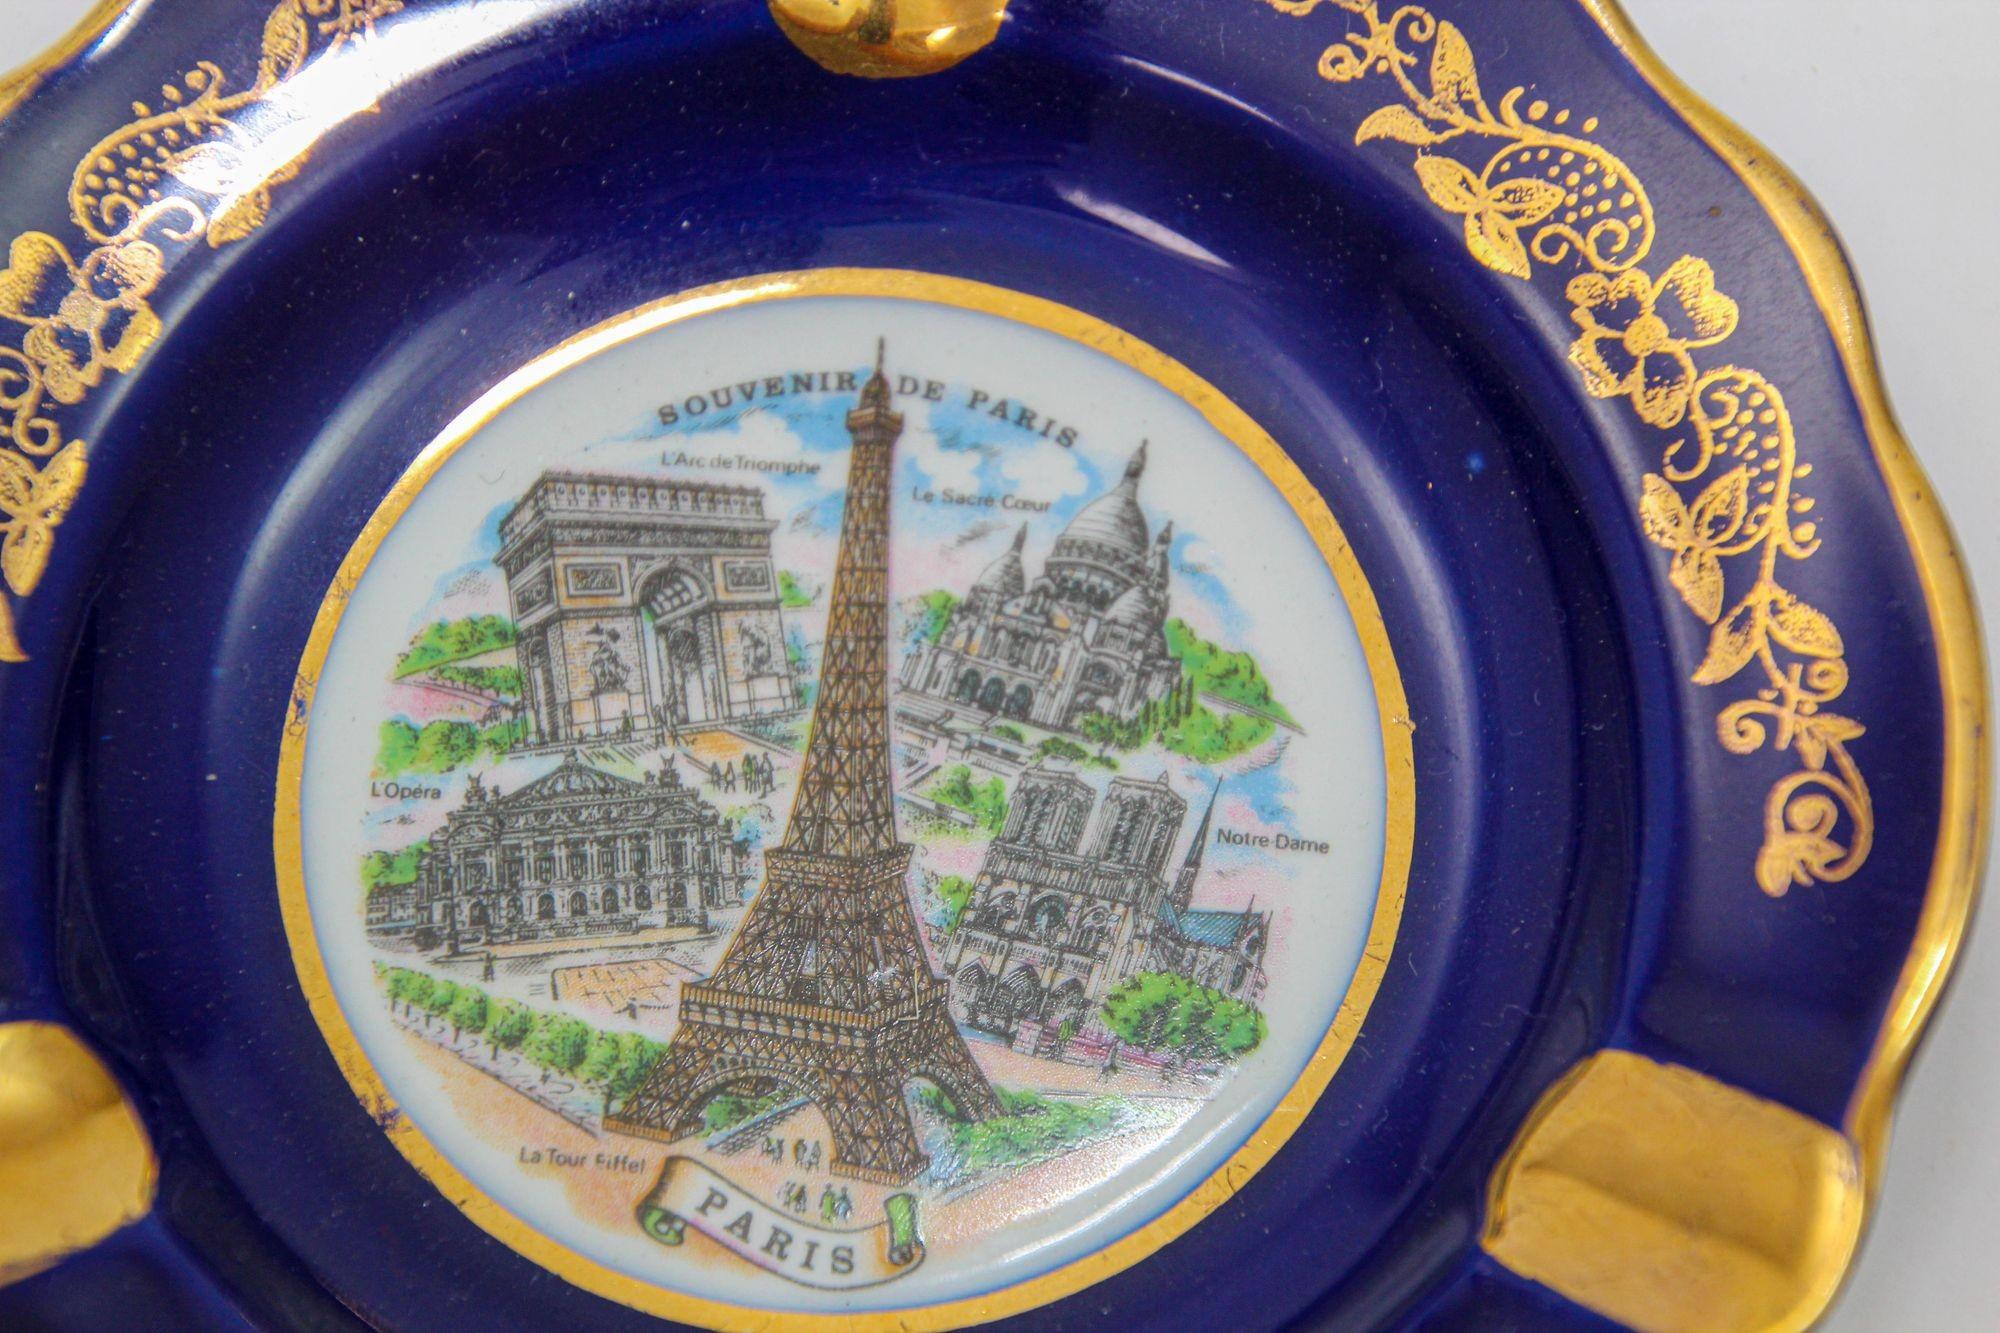 Louis XIV Limoges France Porcelain Dish Ashtray Souvenir of Paris Cobalt Blue and 24K Gold For Sale